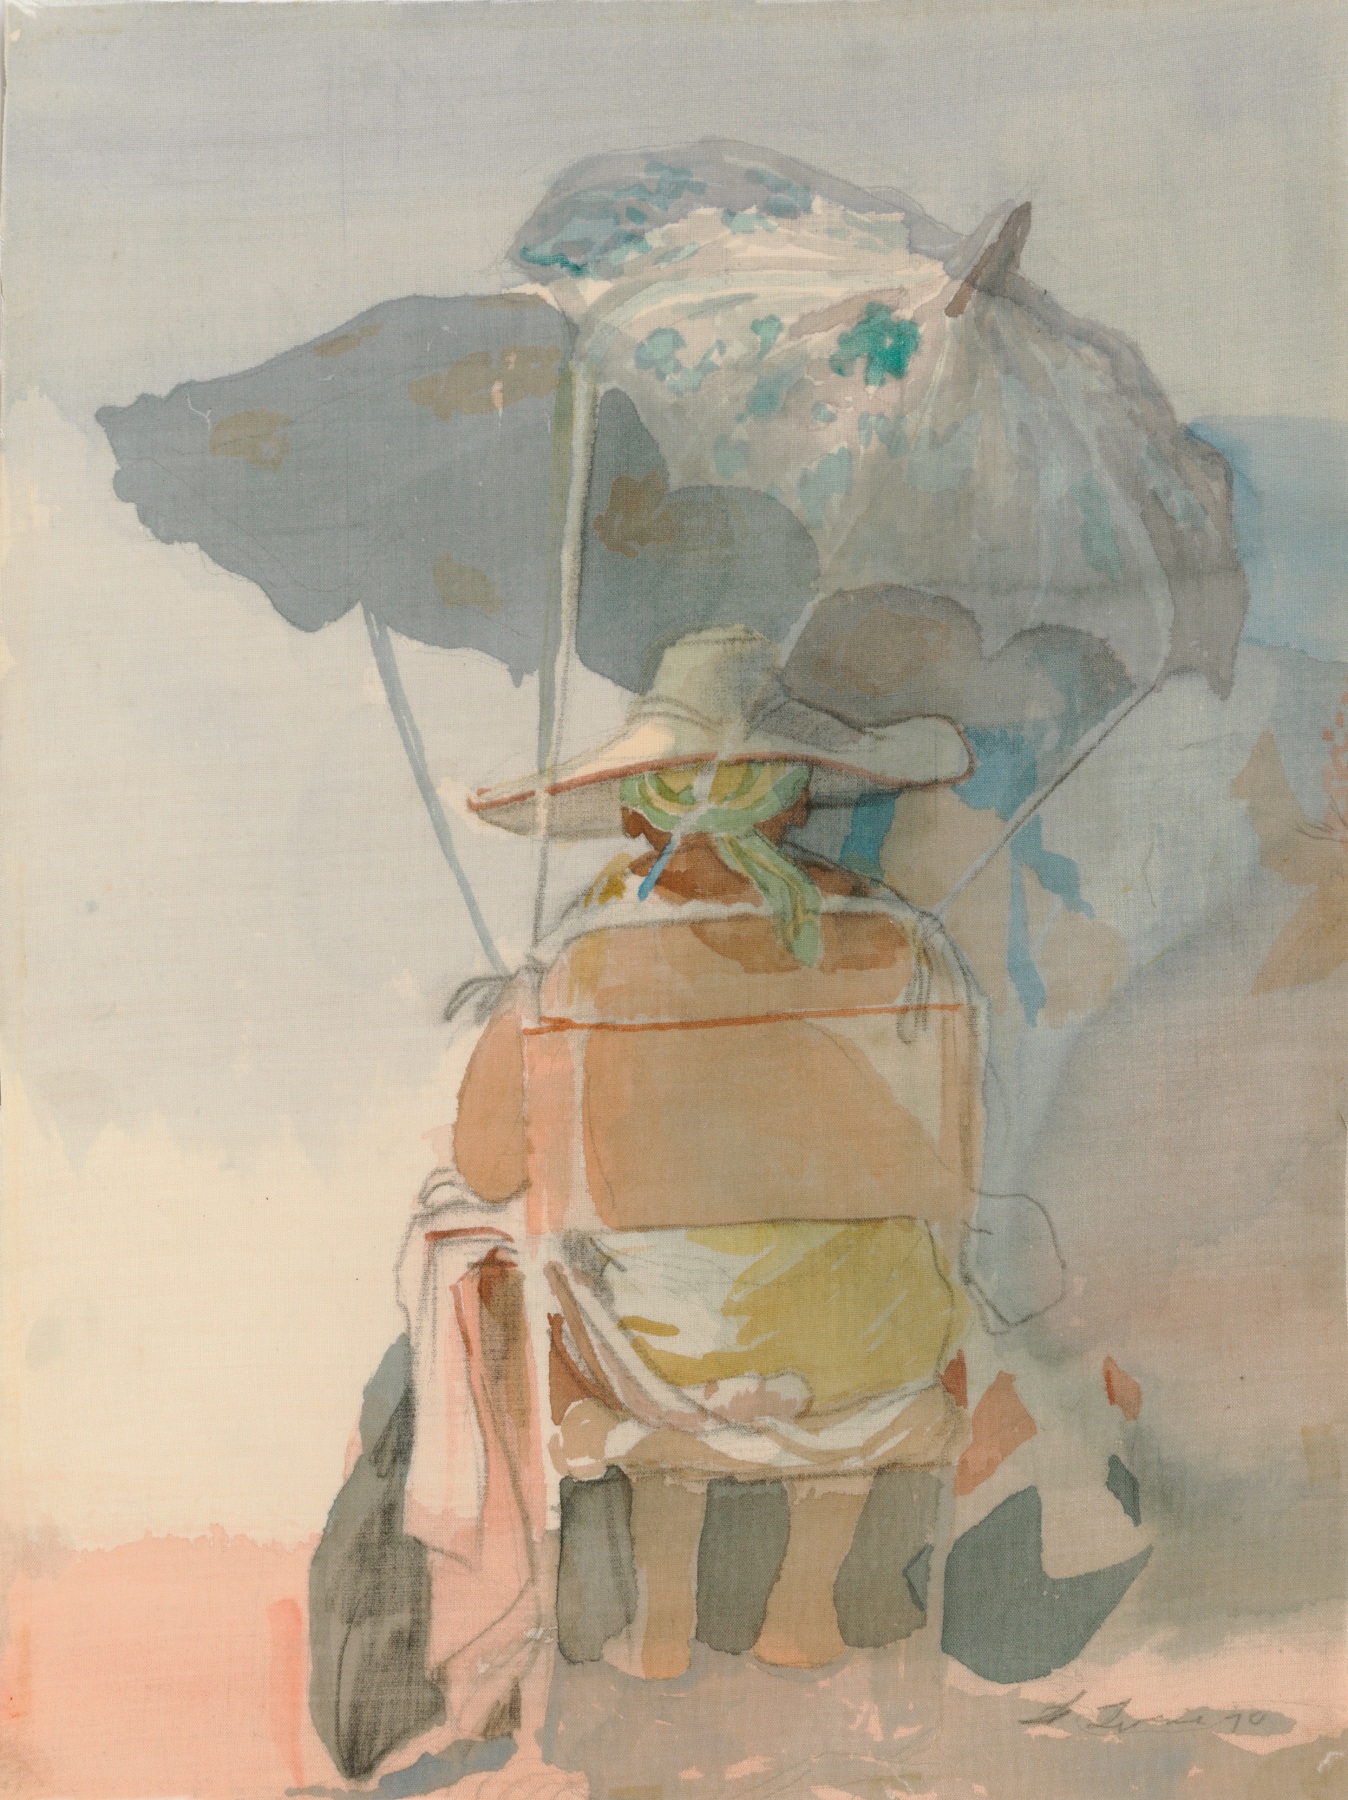 David Levine, Untitled (Beach Umbrella) [SOLD], 1984, watercolor on silk, 12 x 9 inches